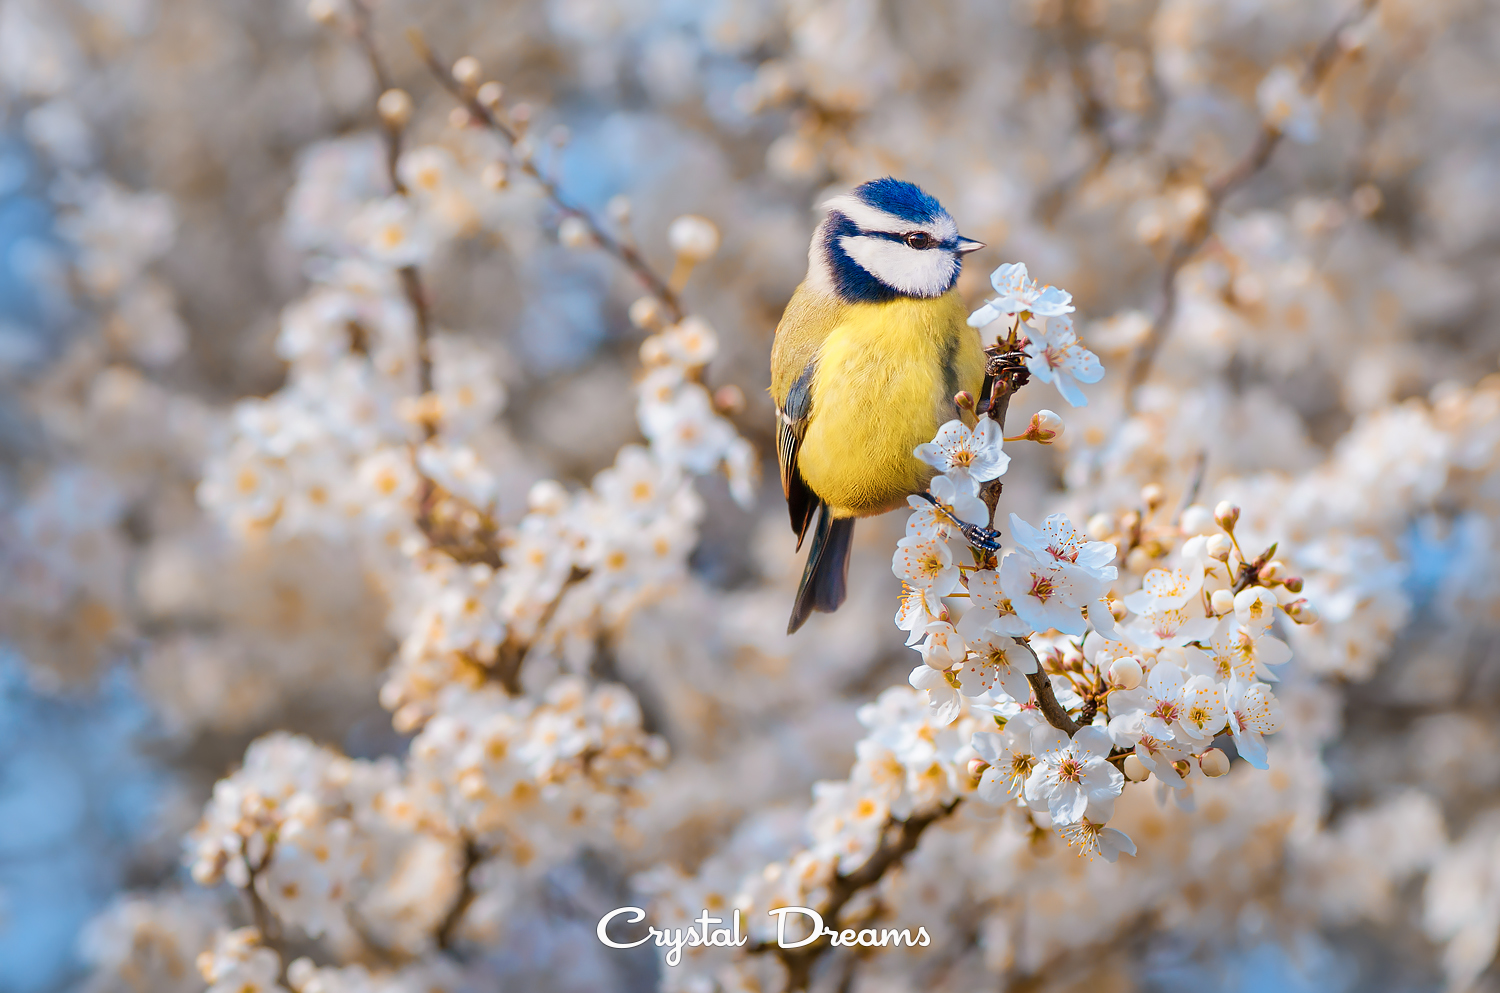 Фото Птичка сидит на весенних цветущих ветках дерева, фотограф Крылова Татьяна